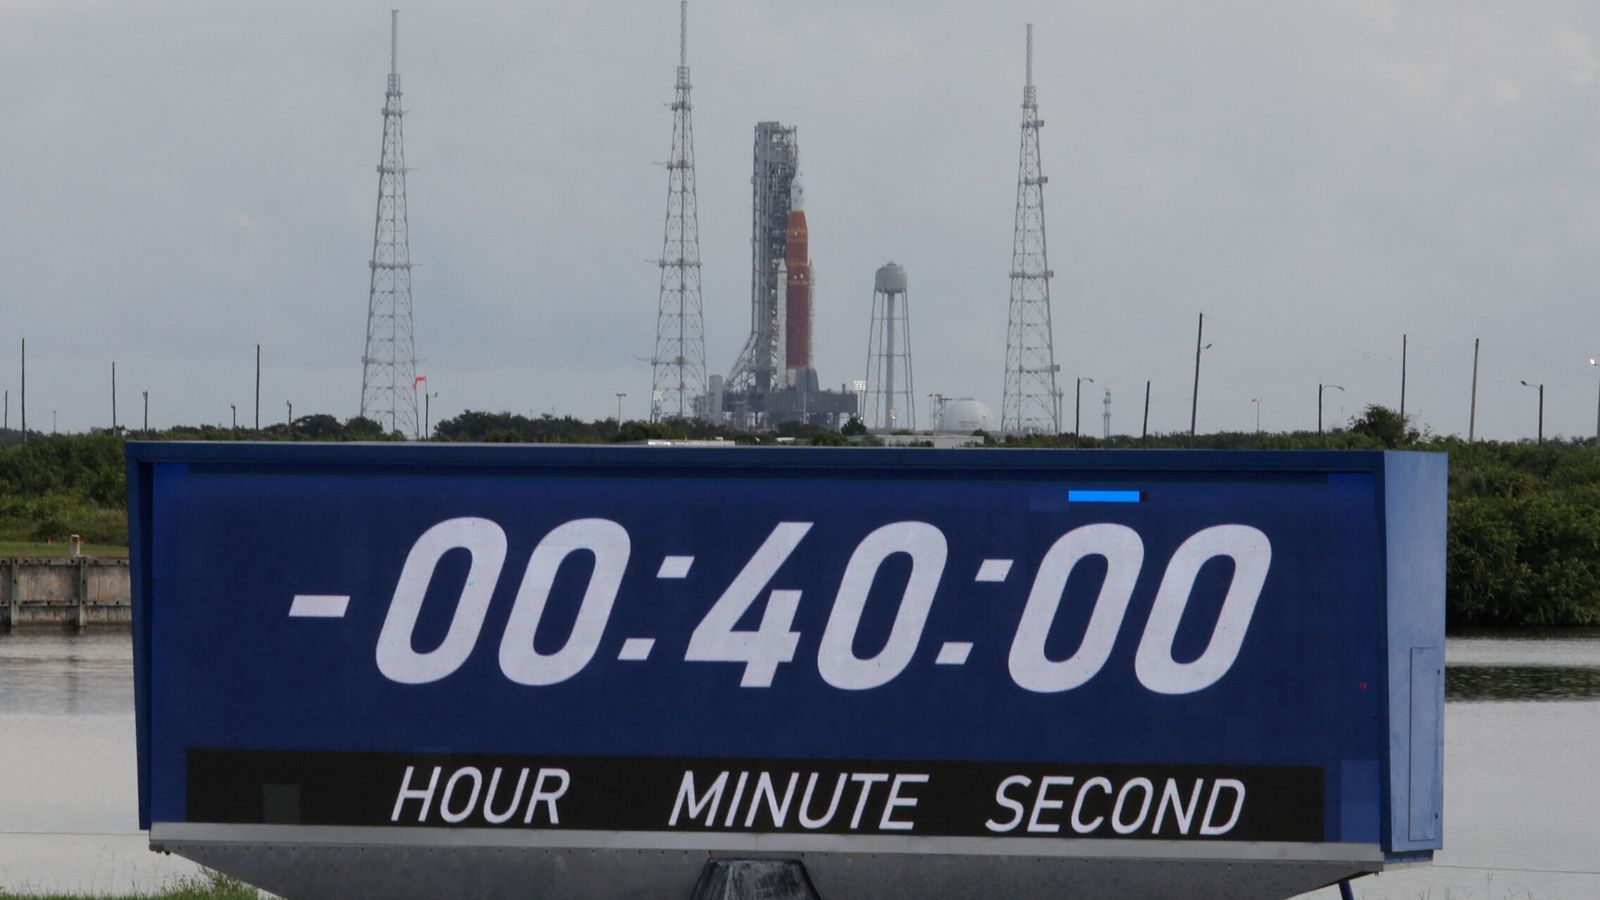 El Artemis I se muestra sobre el reloj de cuenta regresiva del sitio de prensa después de que se retrasara el lanzamiento en el Centro Espacial Kennedy. (Thom Baur/Reuters)